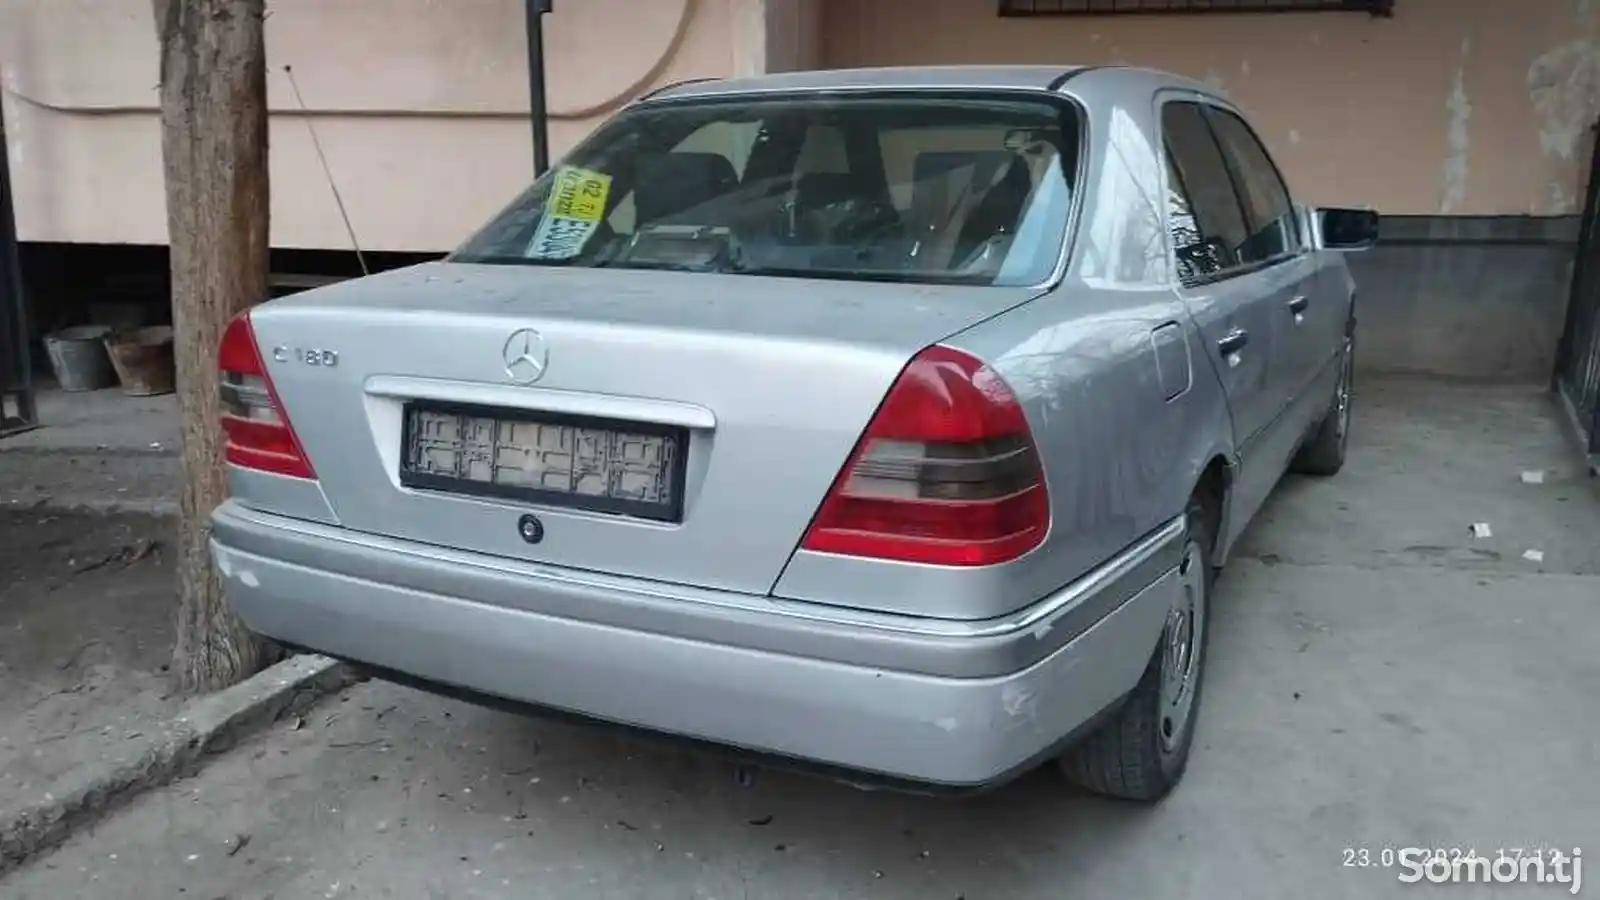 Mercedes-Benz C class, 1997-1